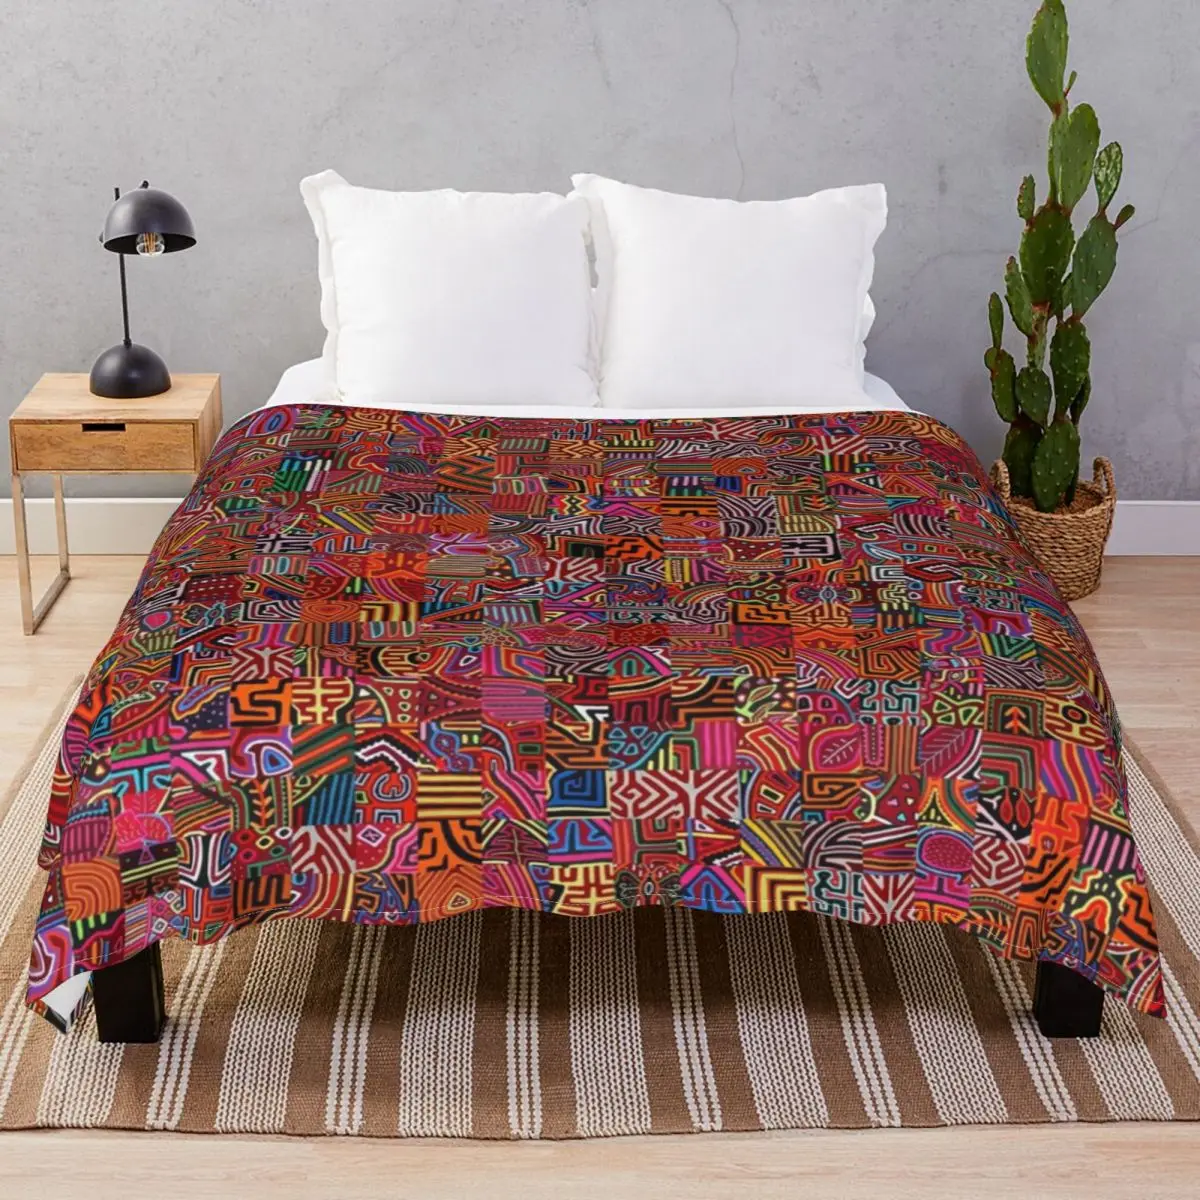 

Одеяло Molas, всесезонное Фланелевое легкое покрывало для постельного белья, дивана, лагеря, кинотеатра